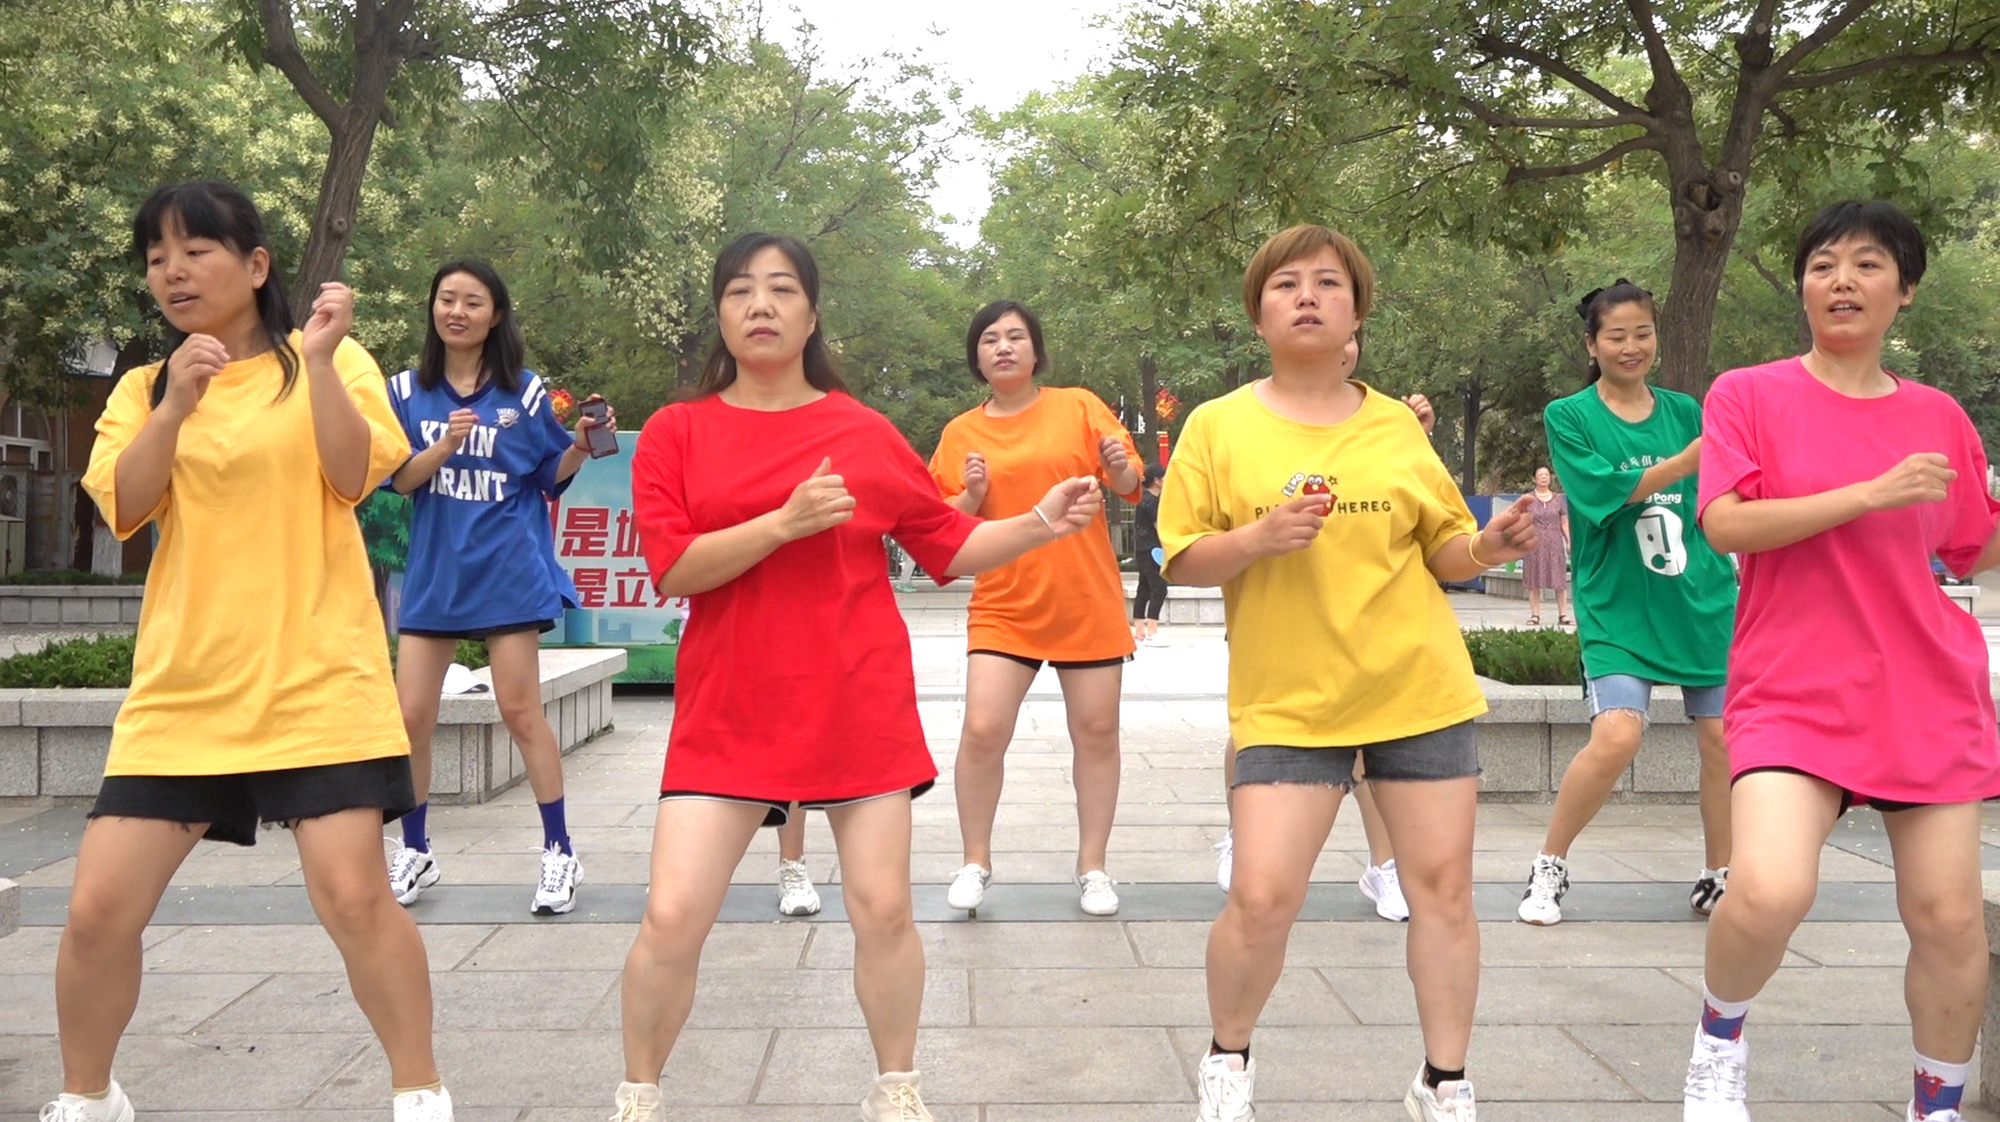 一群美女公园展示广场舞《爱疯了》,舞姿帅气潇洒,看不够